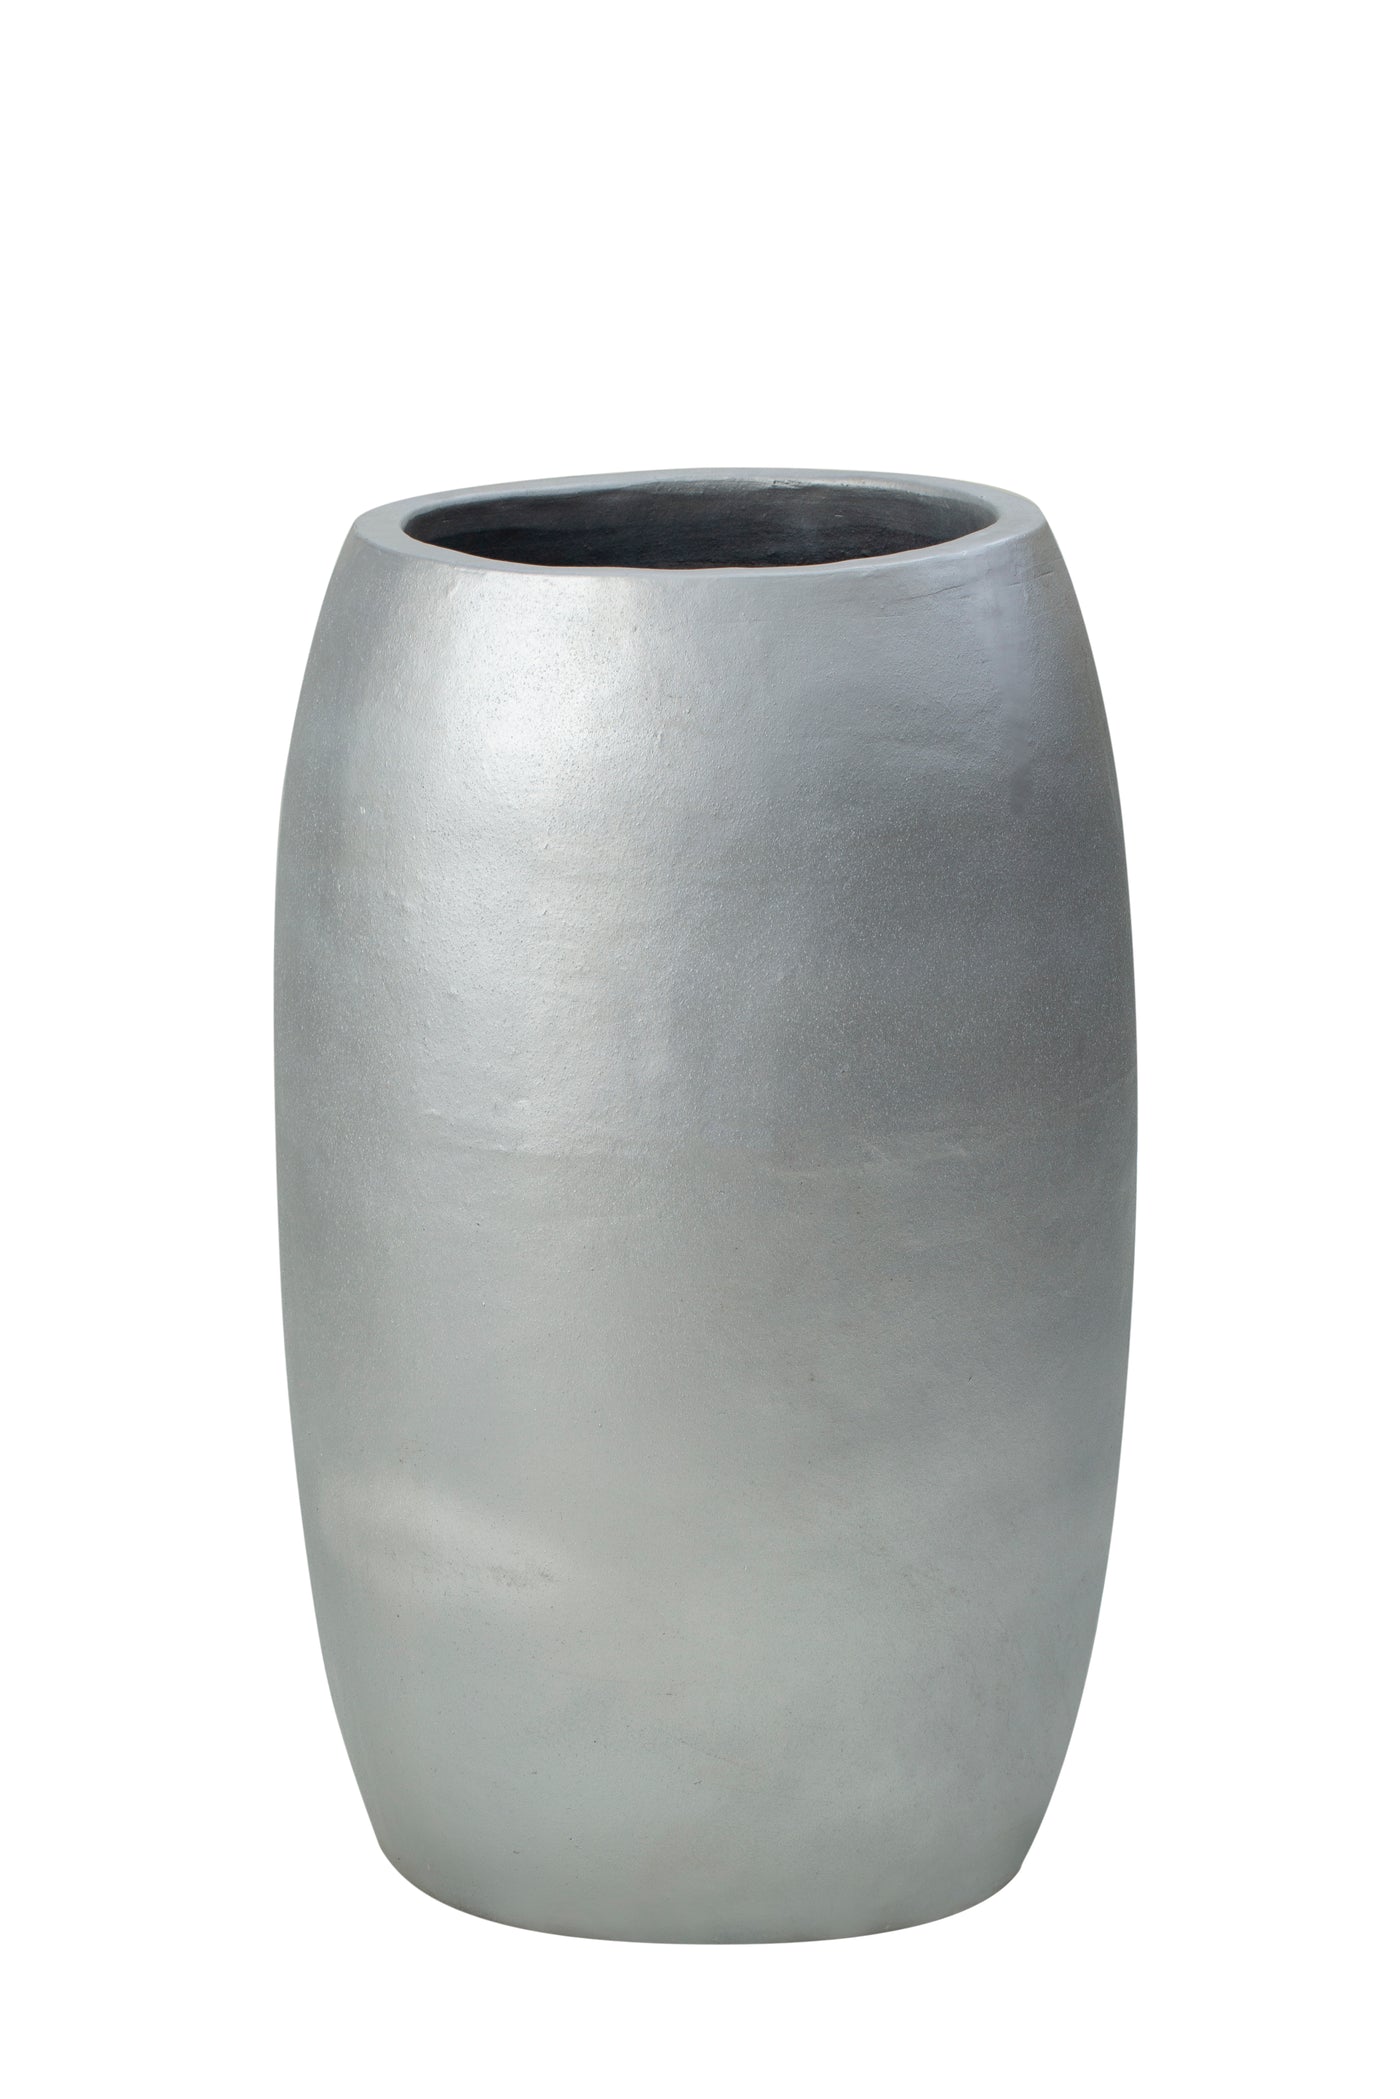 Ghiveci flori D55xH90cm ceramic Duo, argintiu